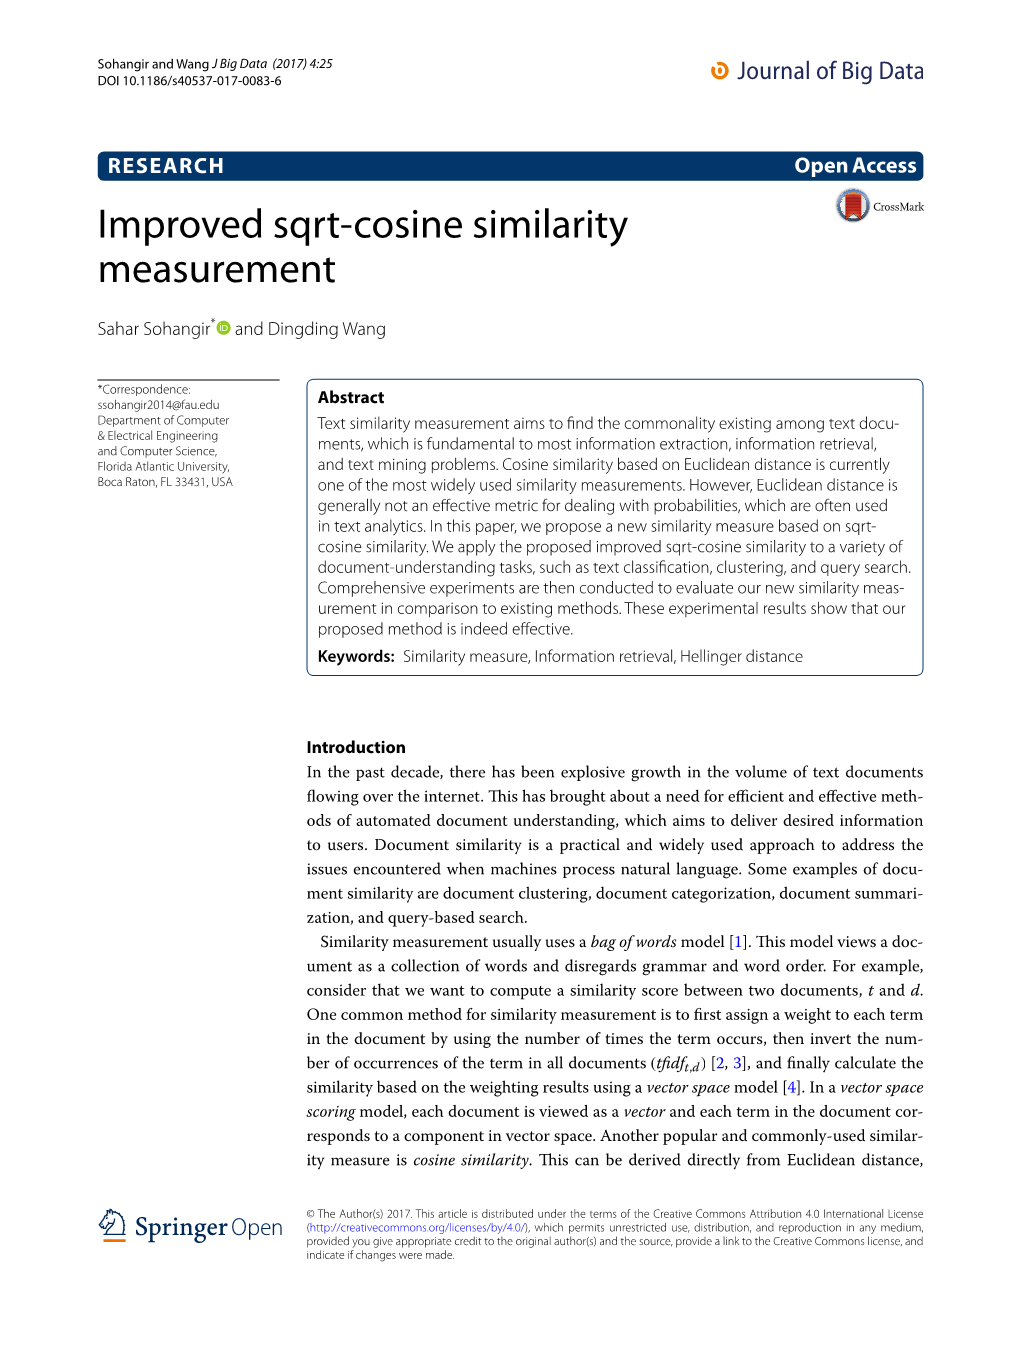 Improved Sqrt-Cosine Similarity Measurement